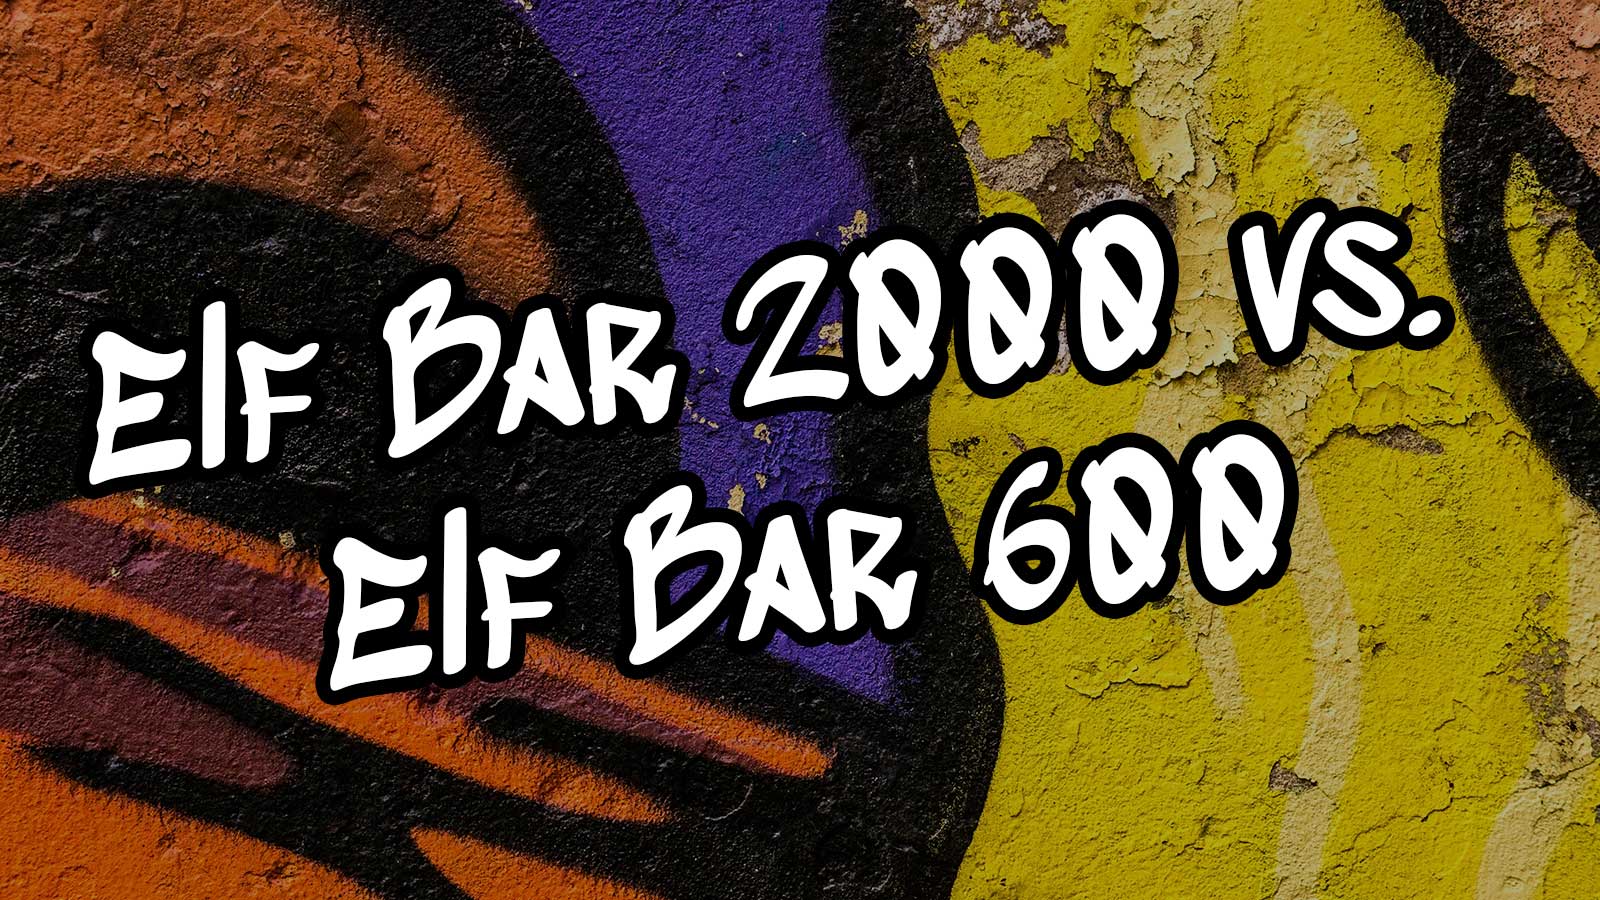 Elf Bar 2000 Einweg E-Zigarette: Was unterscheidet sie von der Elf Bar 600?